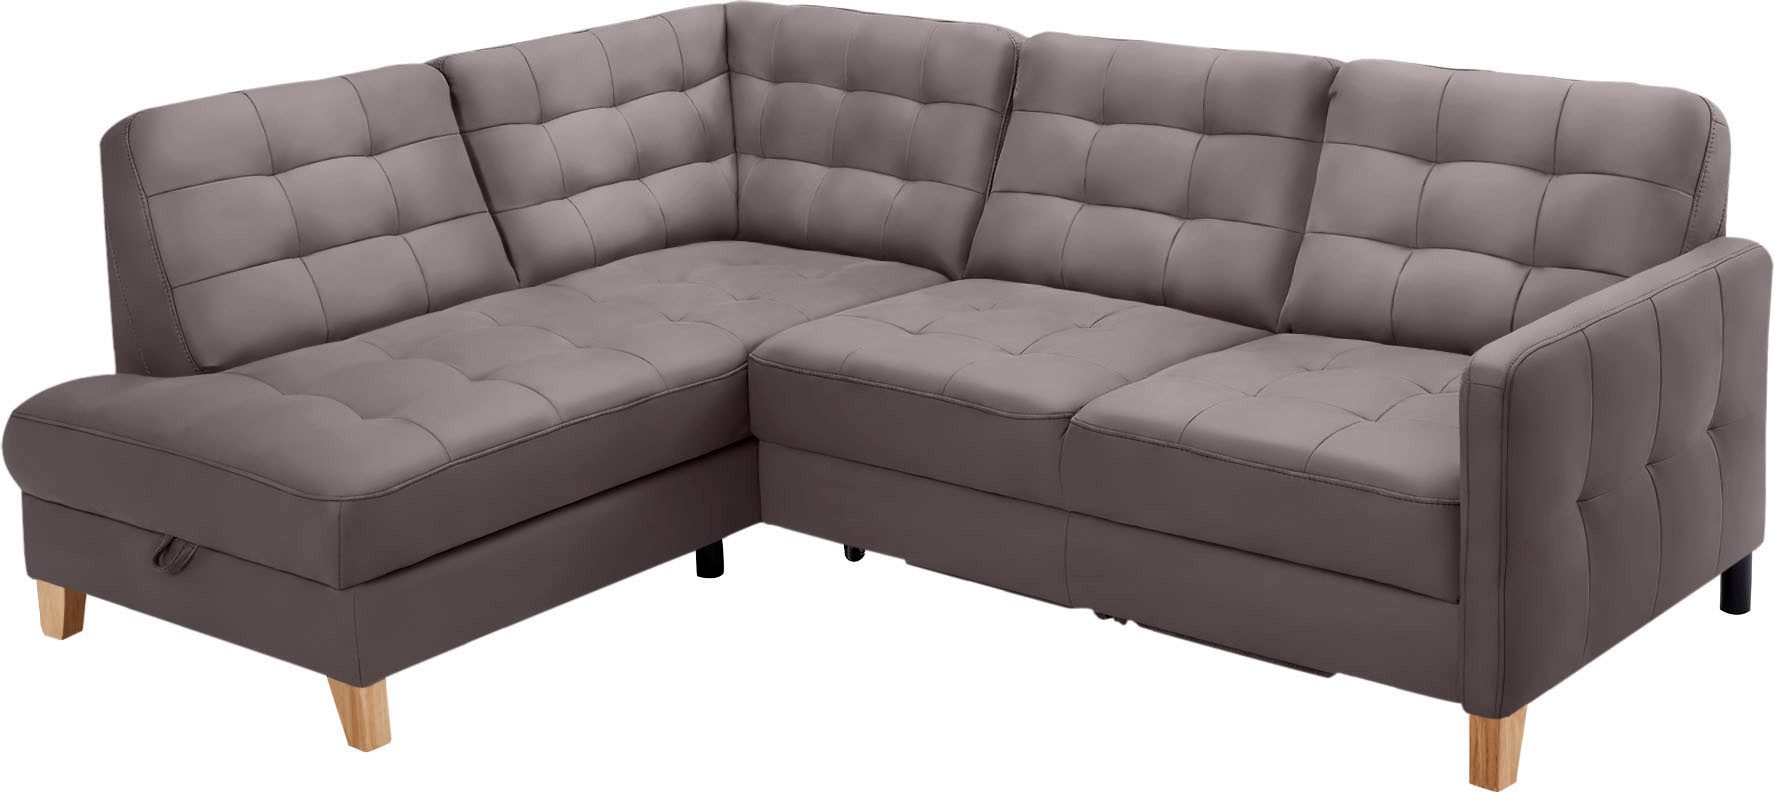 exxpo - sofa fashion Ecksofa in Bettfunktion mit wahlweise und vielen Bezugsqualitäten Bettkasten, Elio